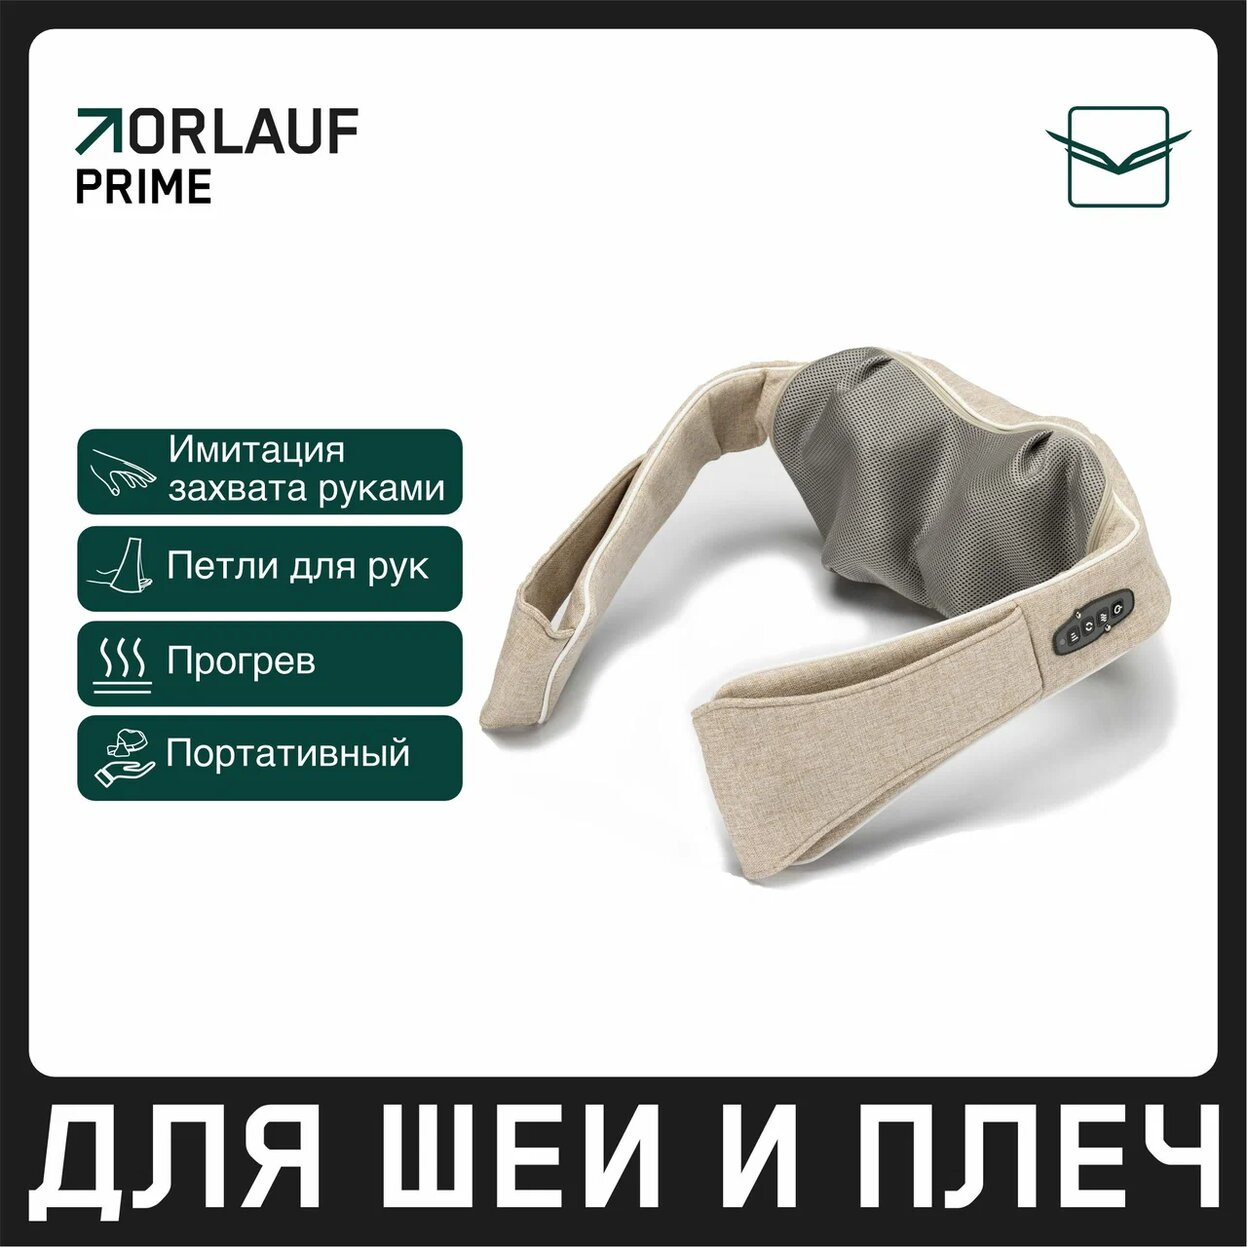 Orlauf Prime из каталога устройств для массажа в Челябинске по цене 11900 ₽